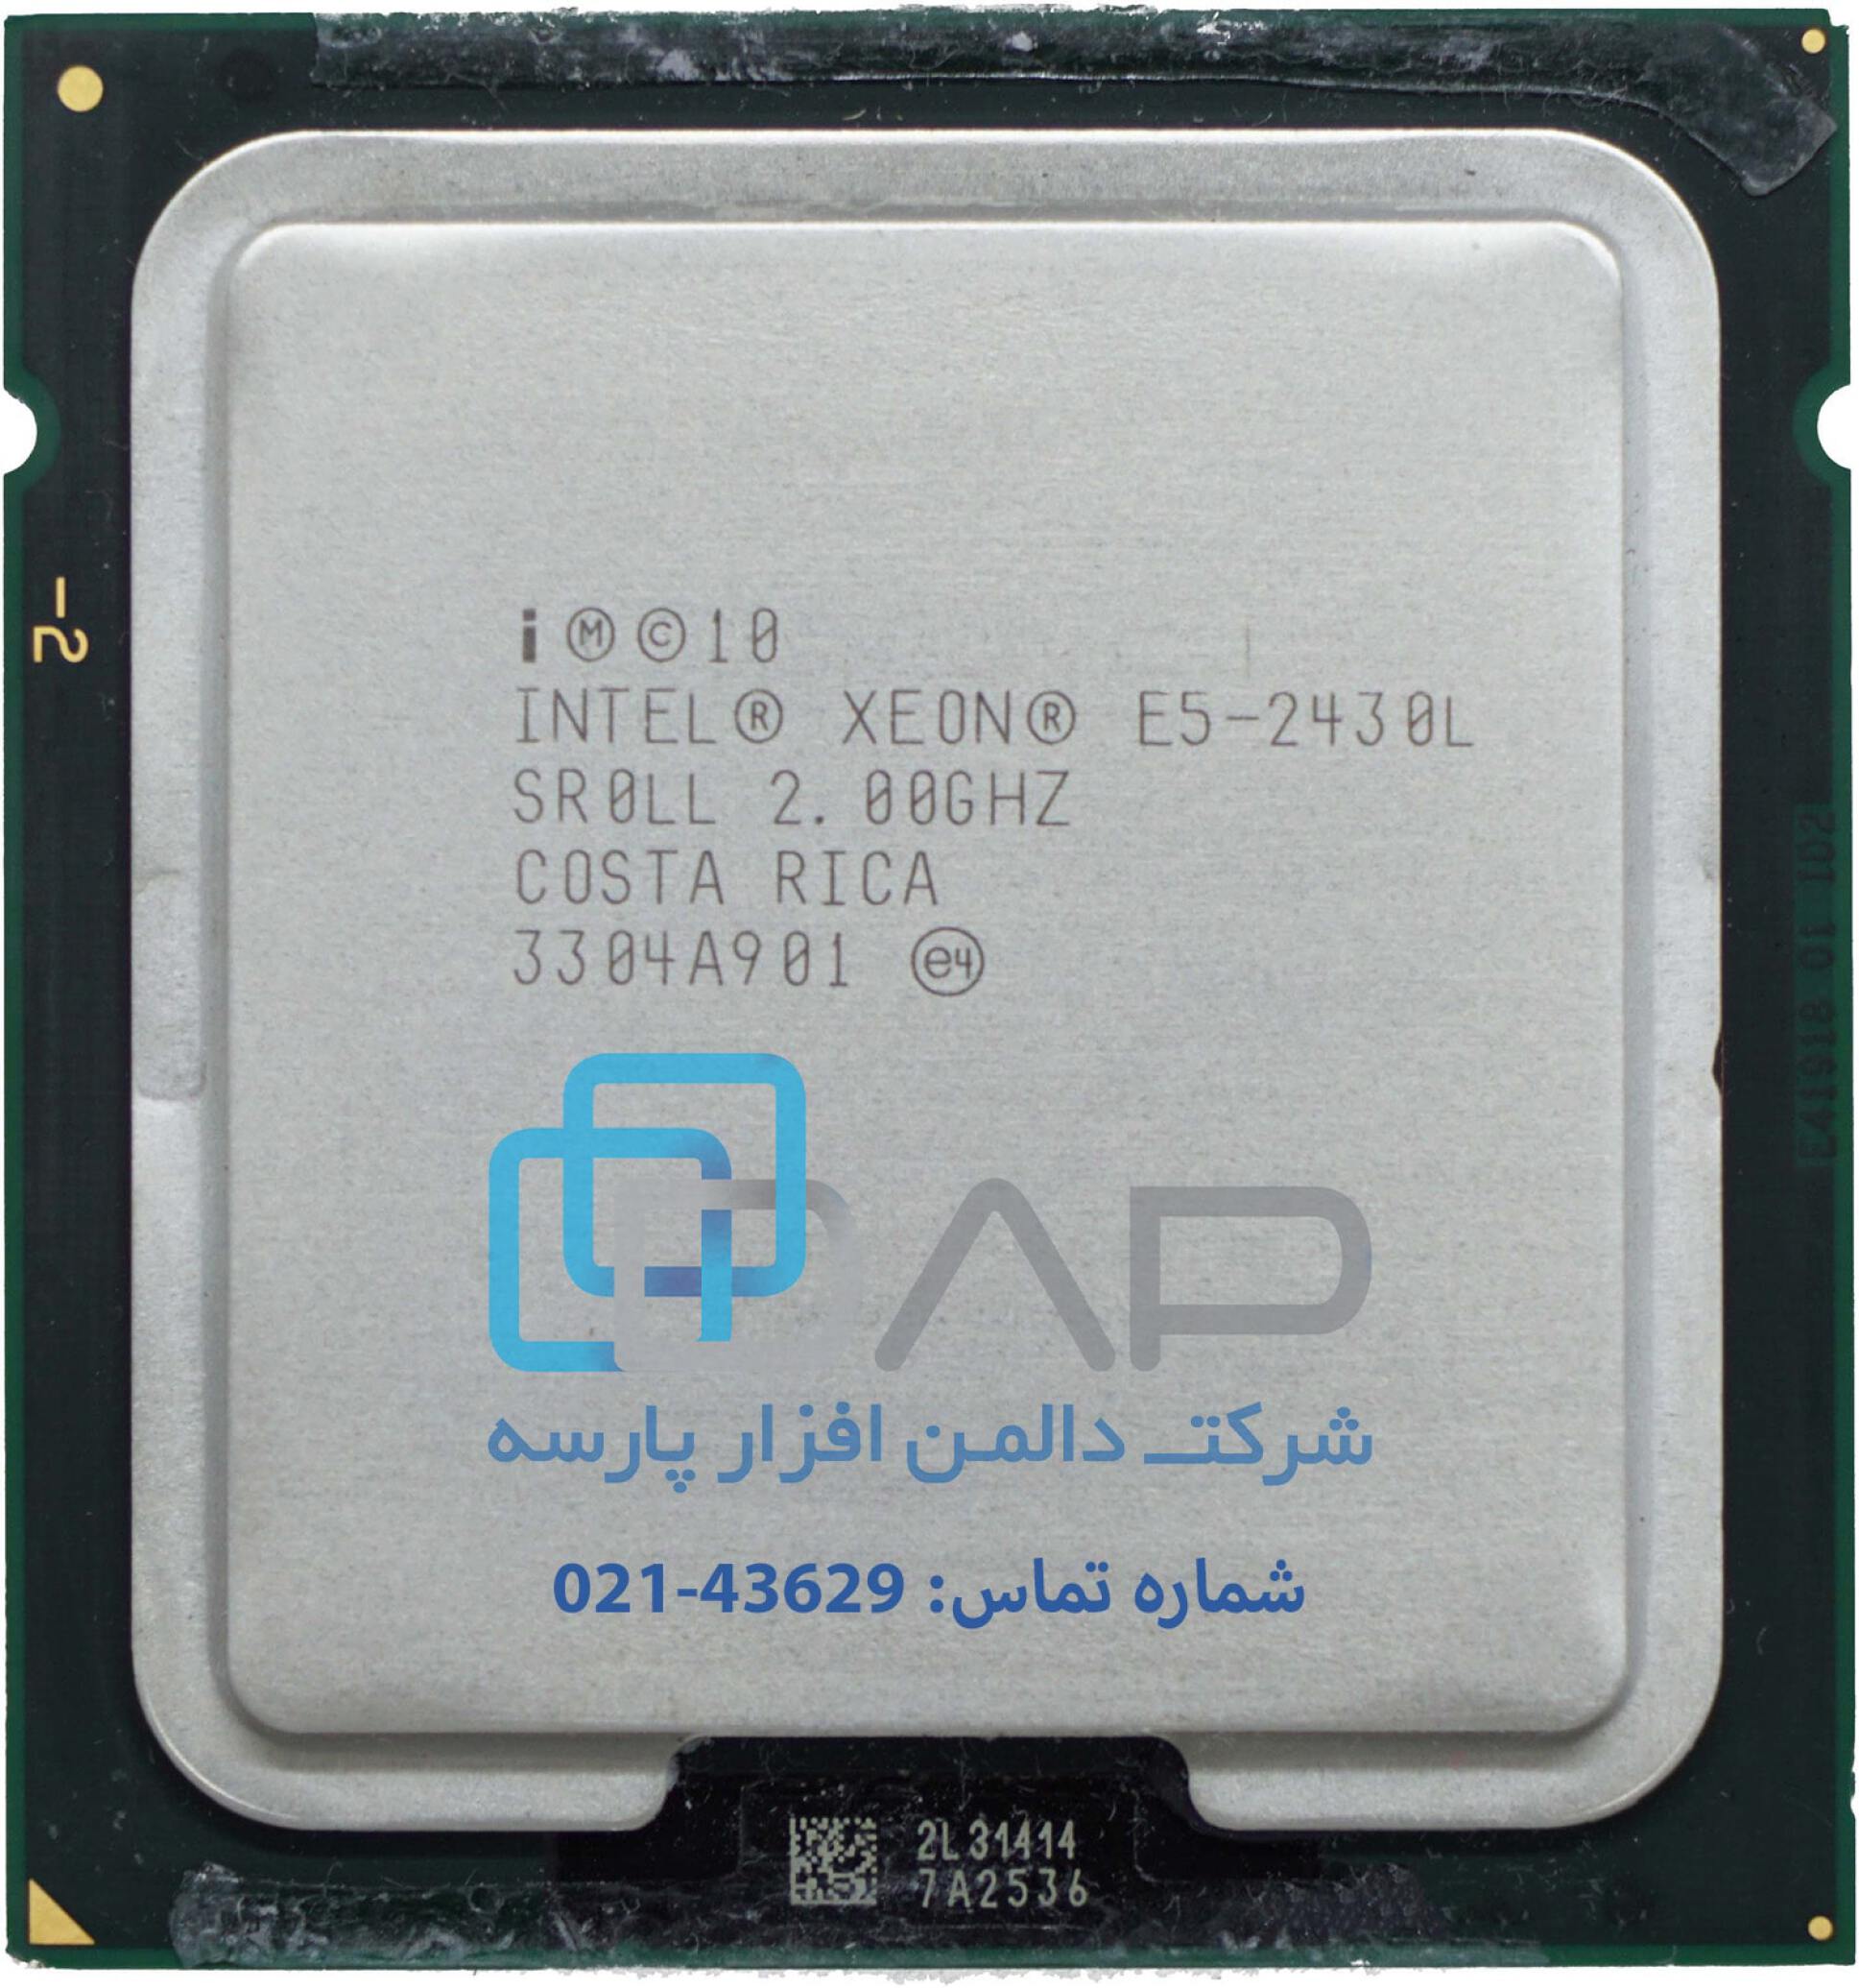  Intel CPU (Xeon® E5-2430L) 